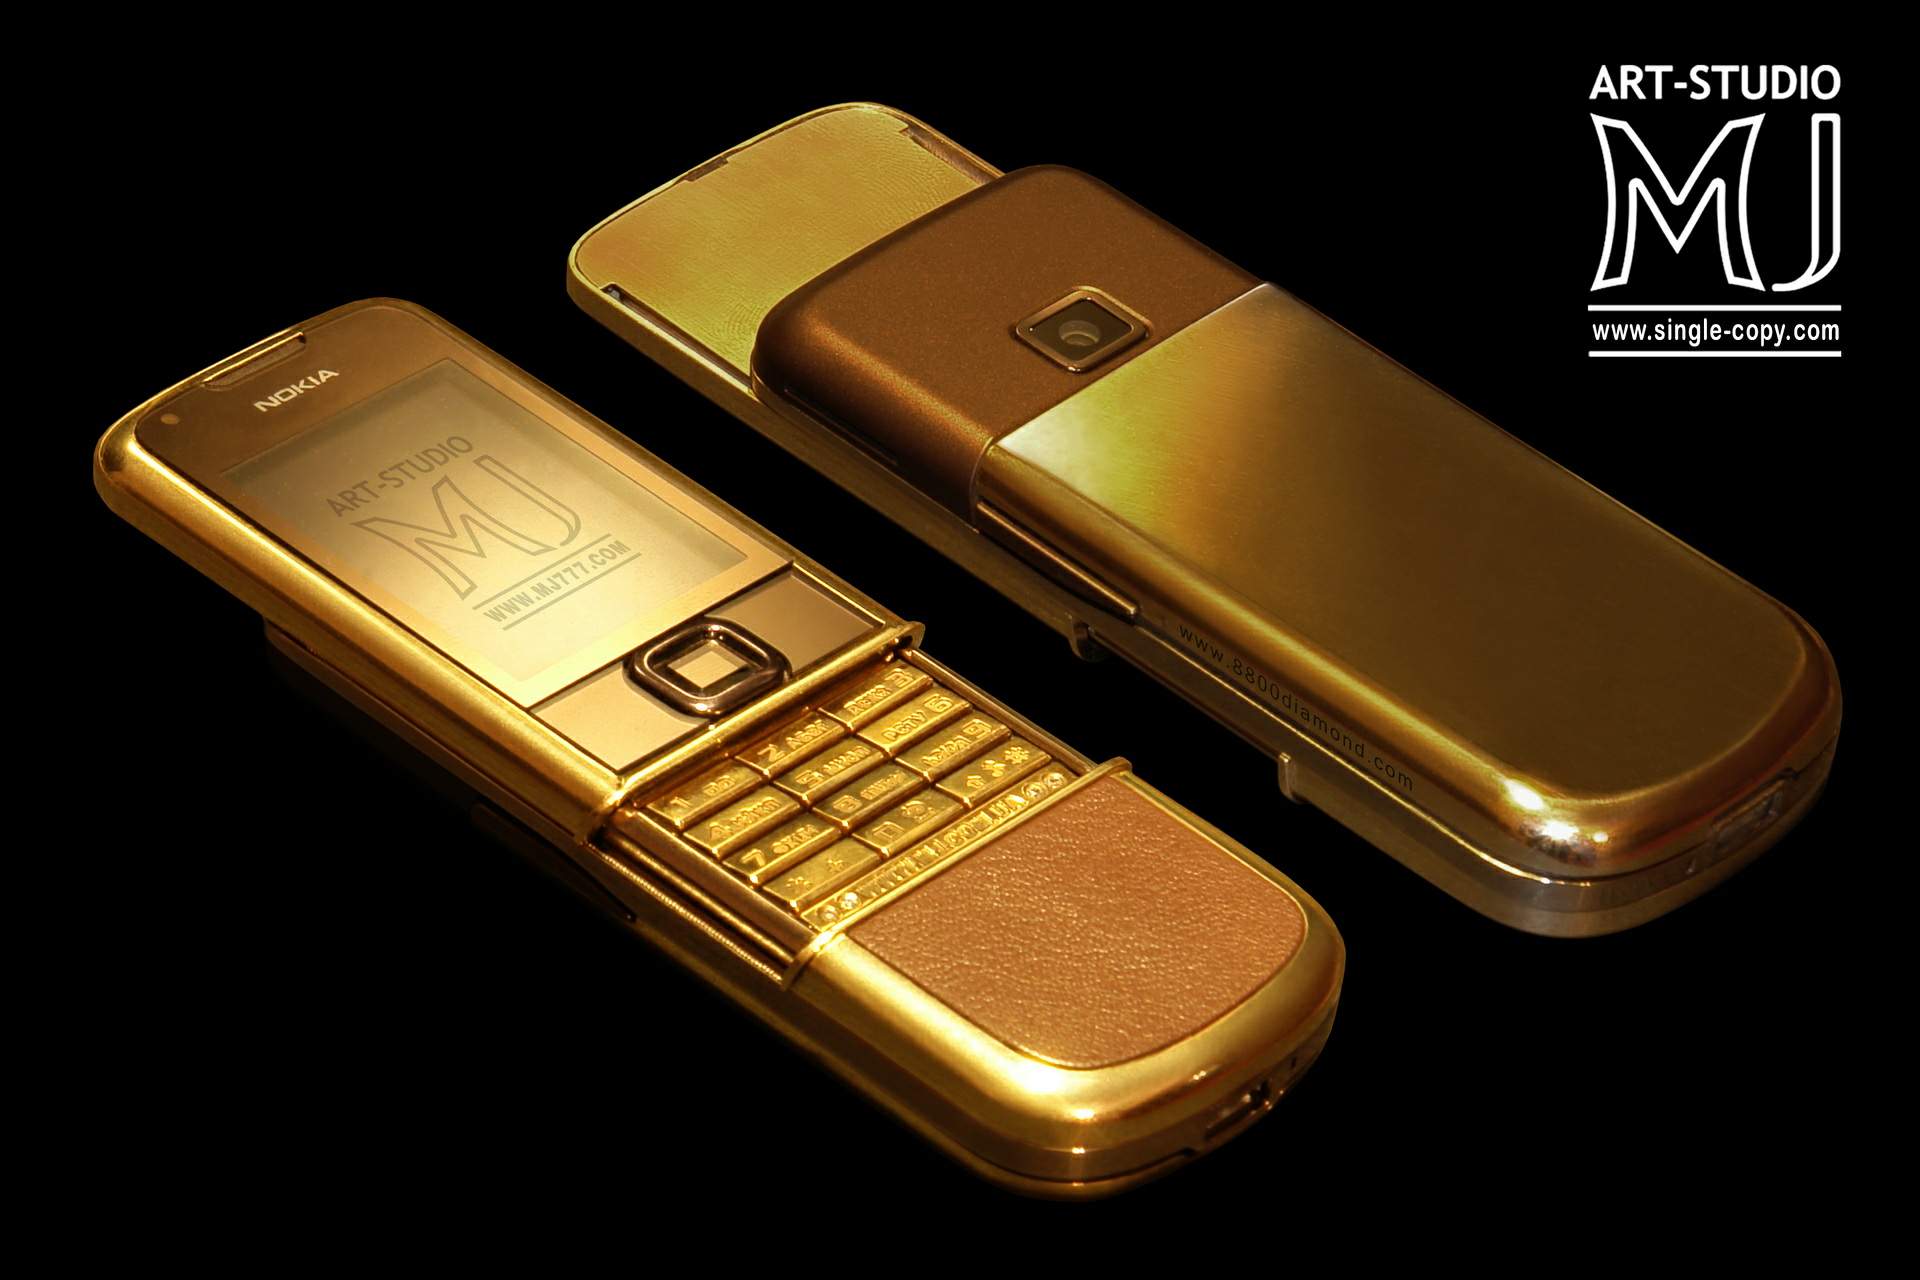 Gold mobile. Nokia 8800 Arte Gold. Nokia 8800 Arte Gold Luxury. Nokia 8800 Gold Edition. Нокиа 8800 Supreme.